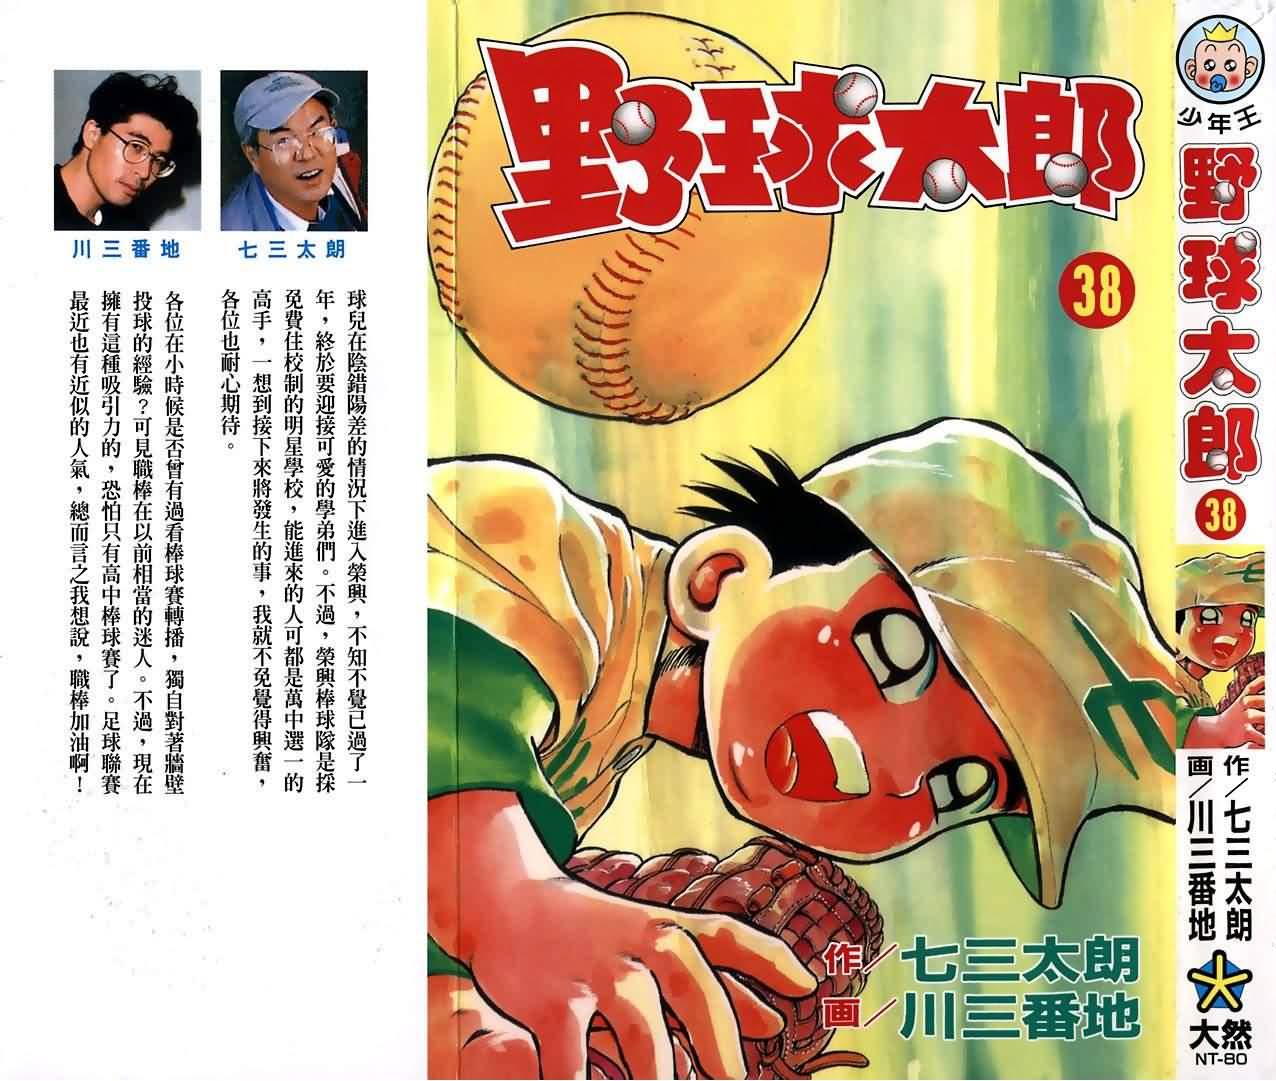 野球太郎漫畫38卷 第1頁 野球太郎38卷劇情 看漫畫